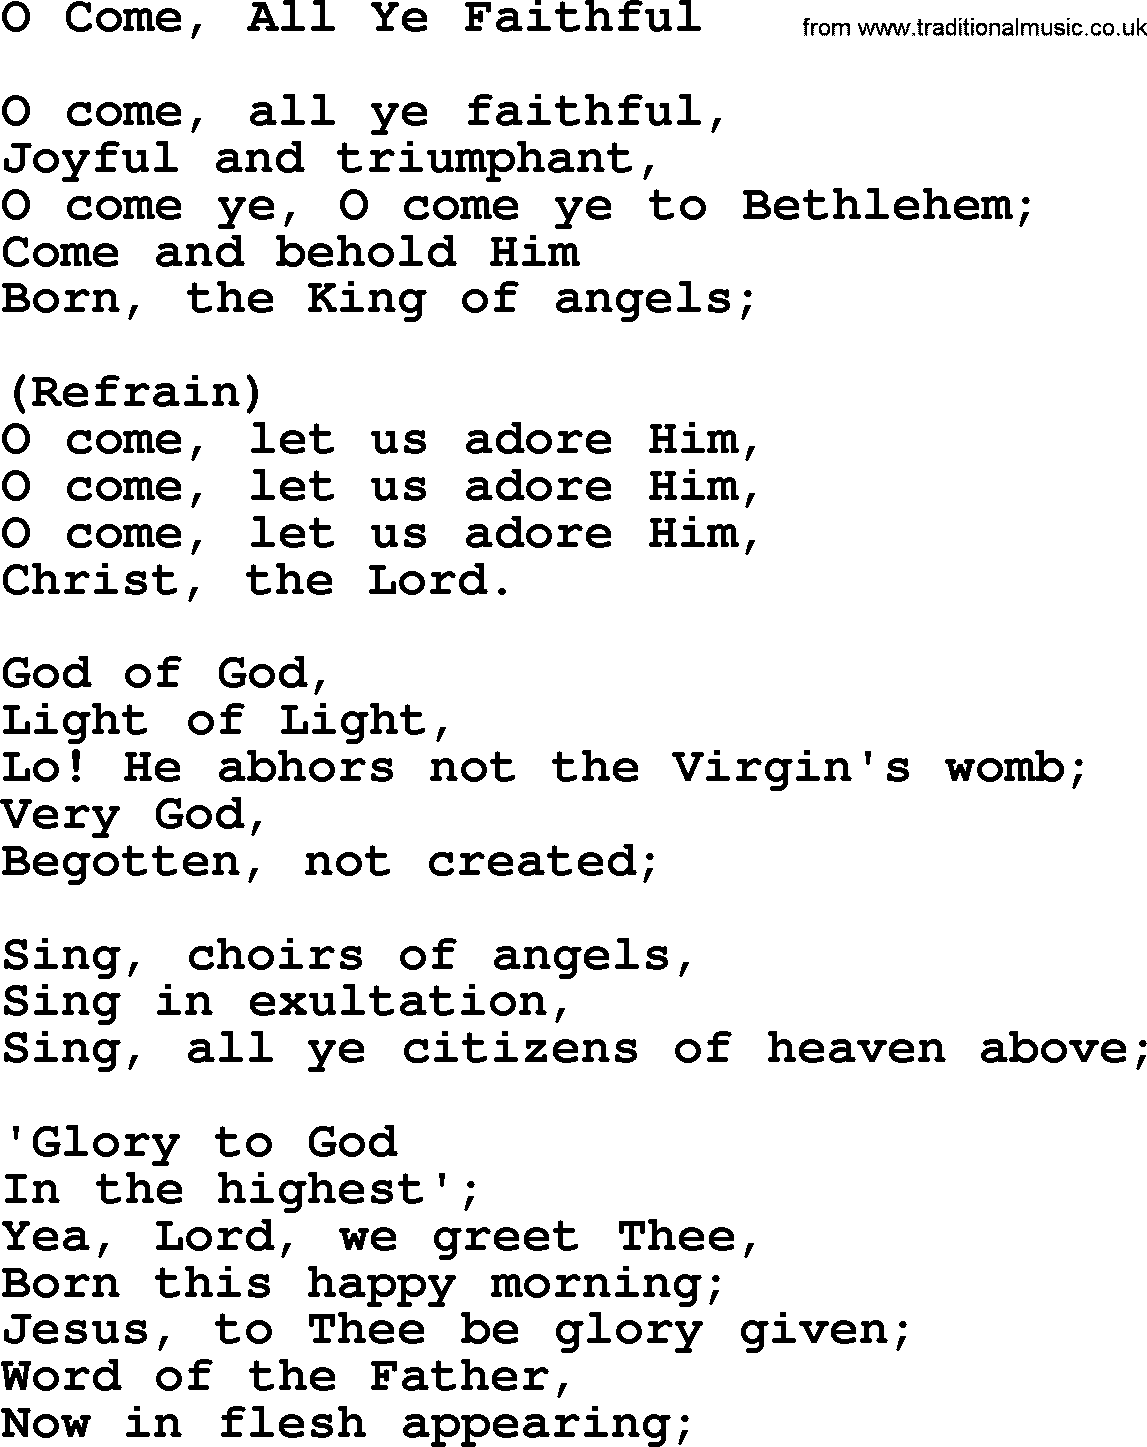 Catholic Hymns, Song: O Come, All Ye Faithful - lyrics and PDF